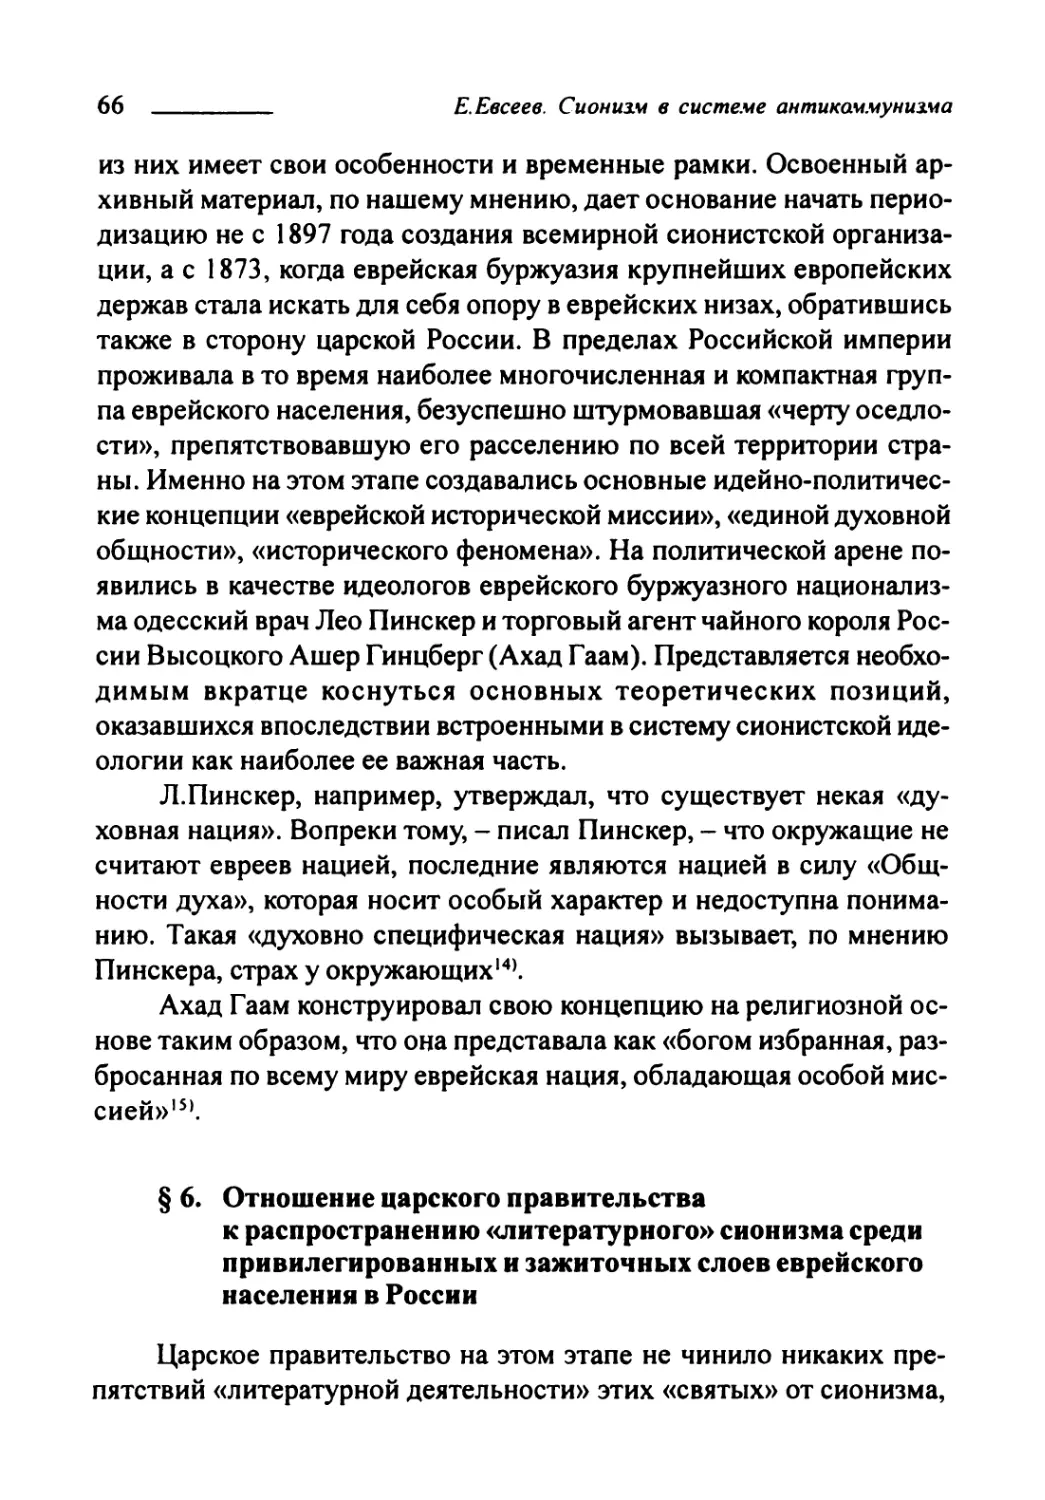 § 6. Отношение царского правительства к распространению «литературного» сионизма среди привилегированных и зажиточных слоёв еврейского населения в России